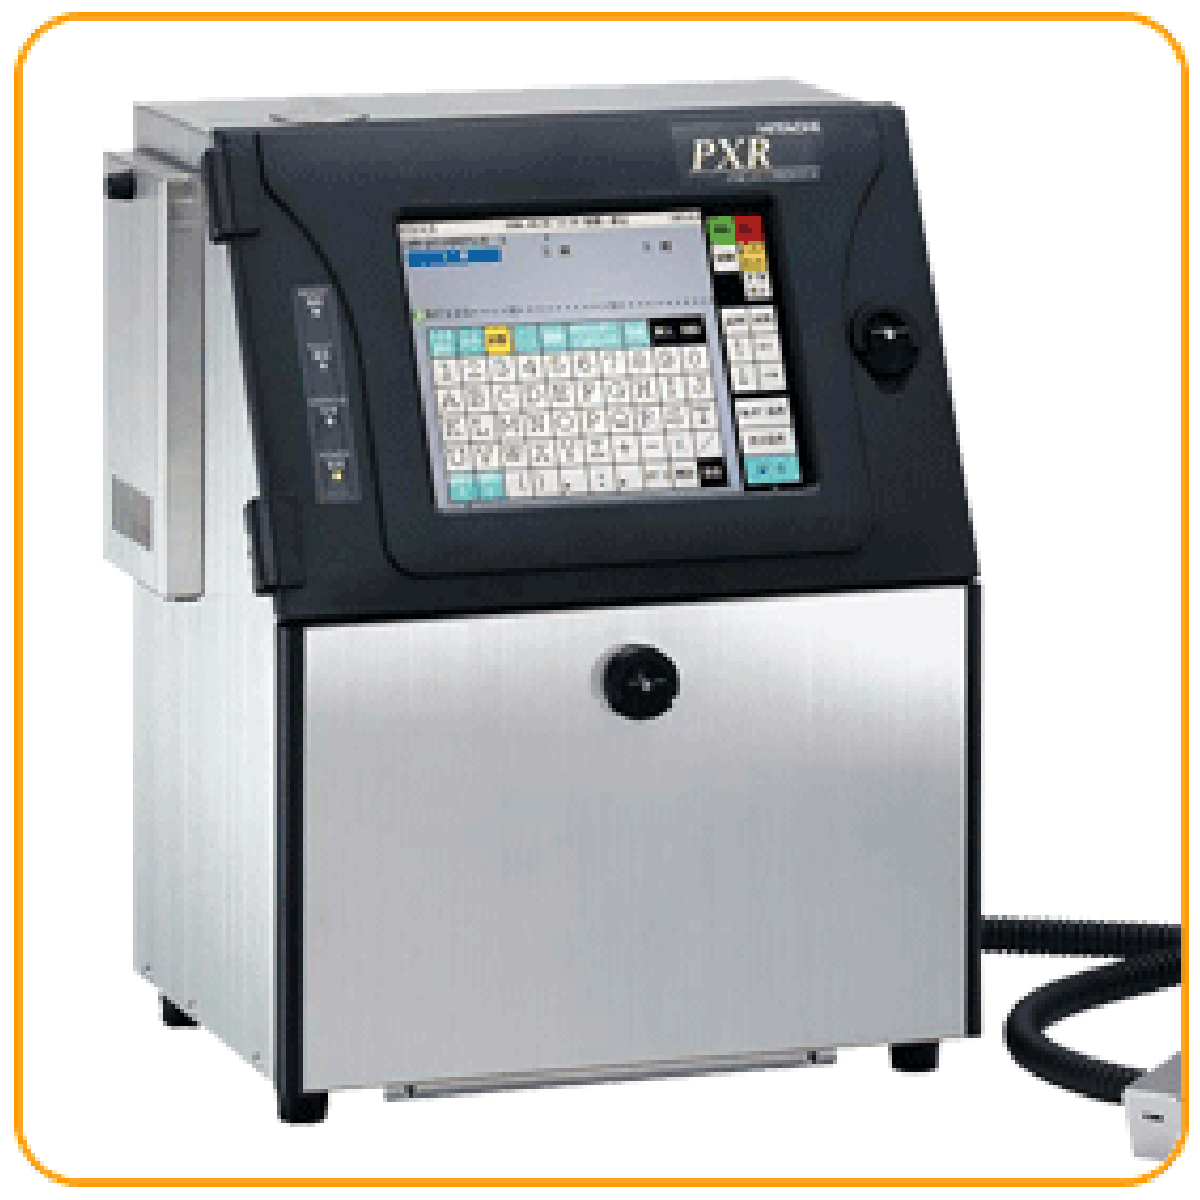 Hitachi PXR_D260W Inkjet Printer_